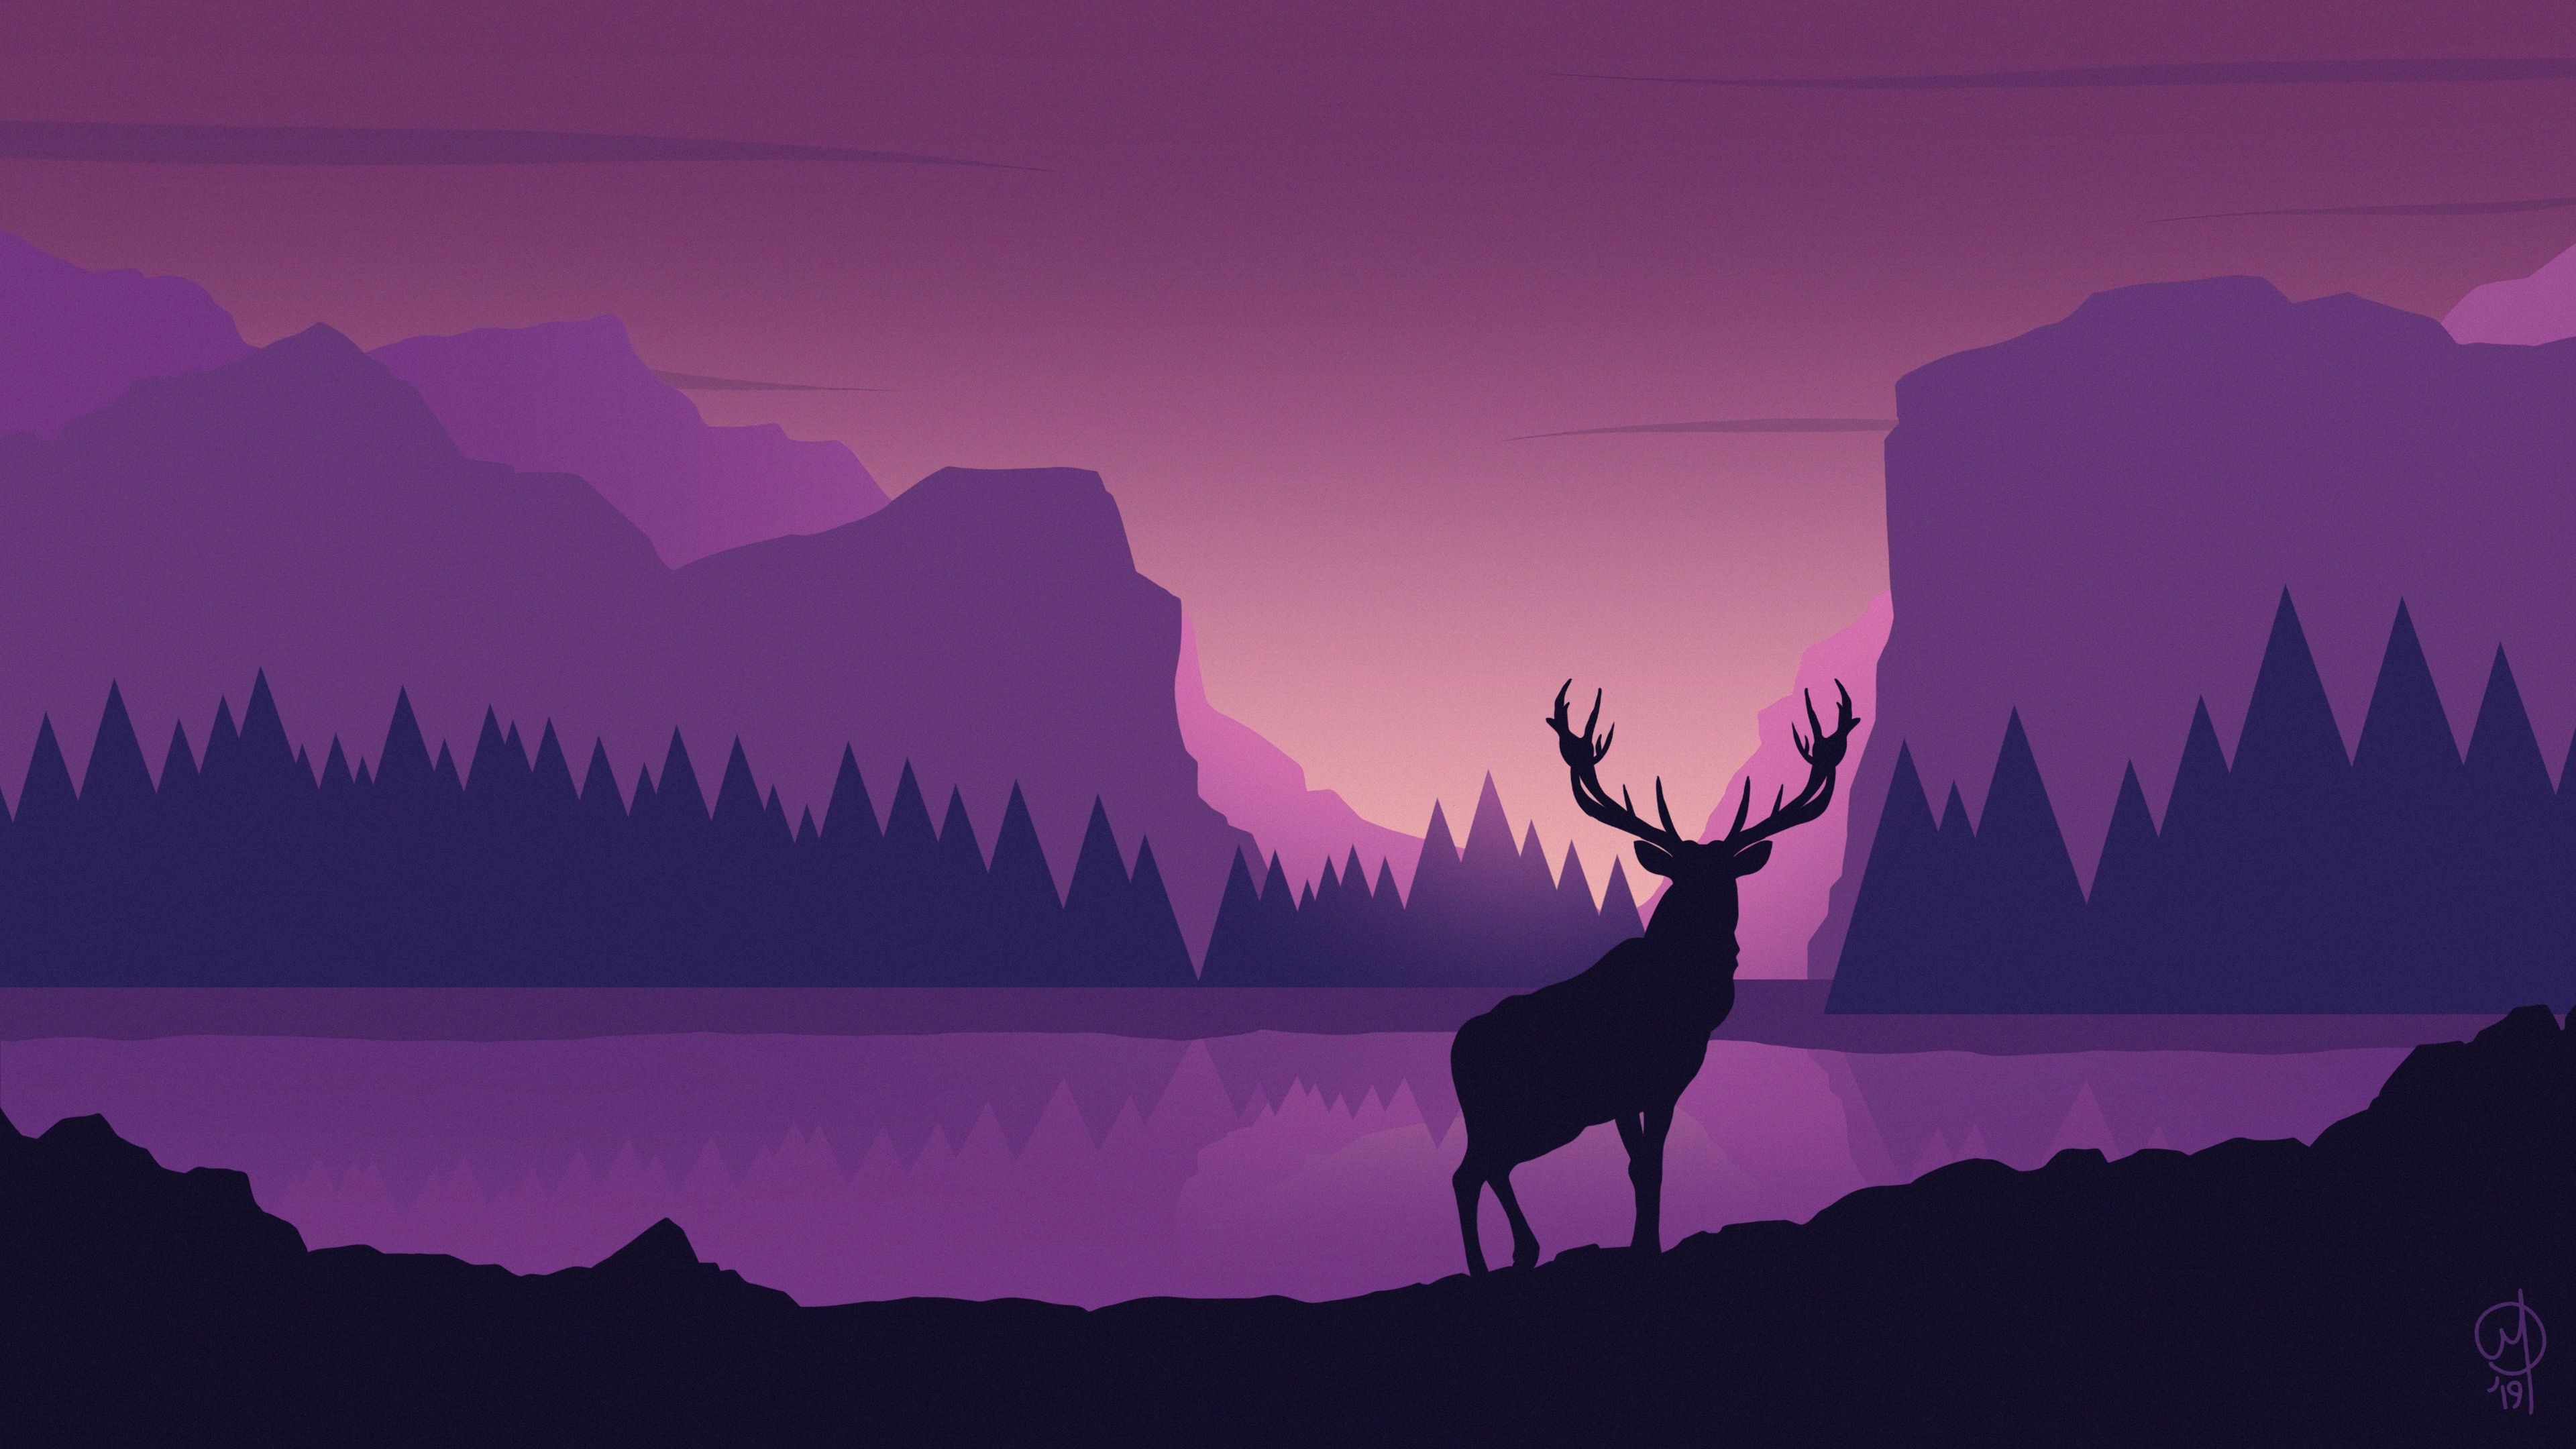 Deer Art 4K wallpaper. Deer wallpaper, Desktop wallpaper art, Deer art